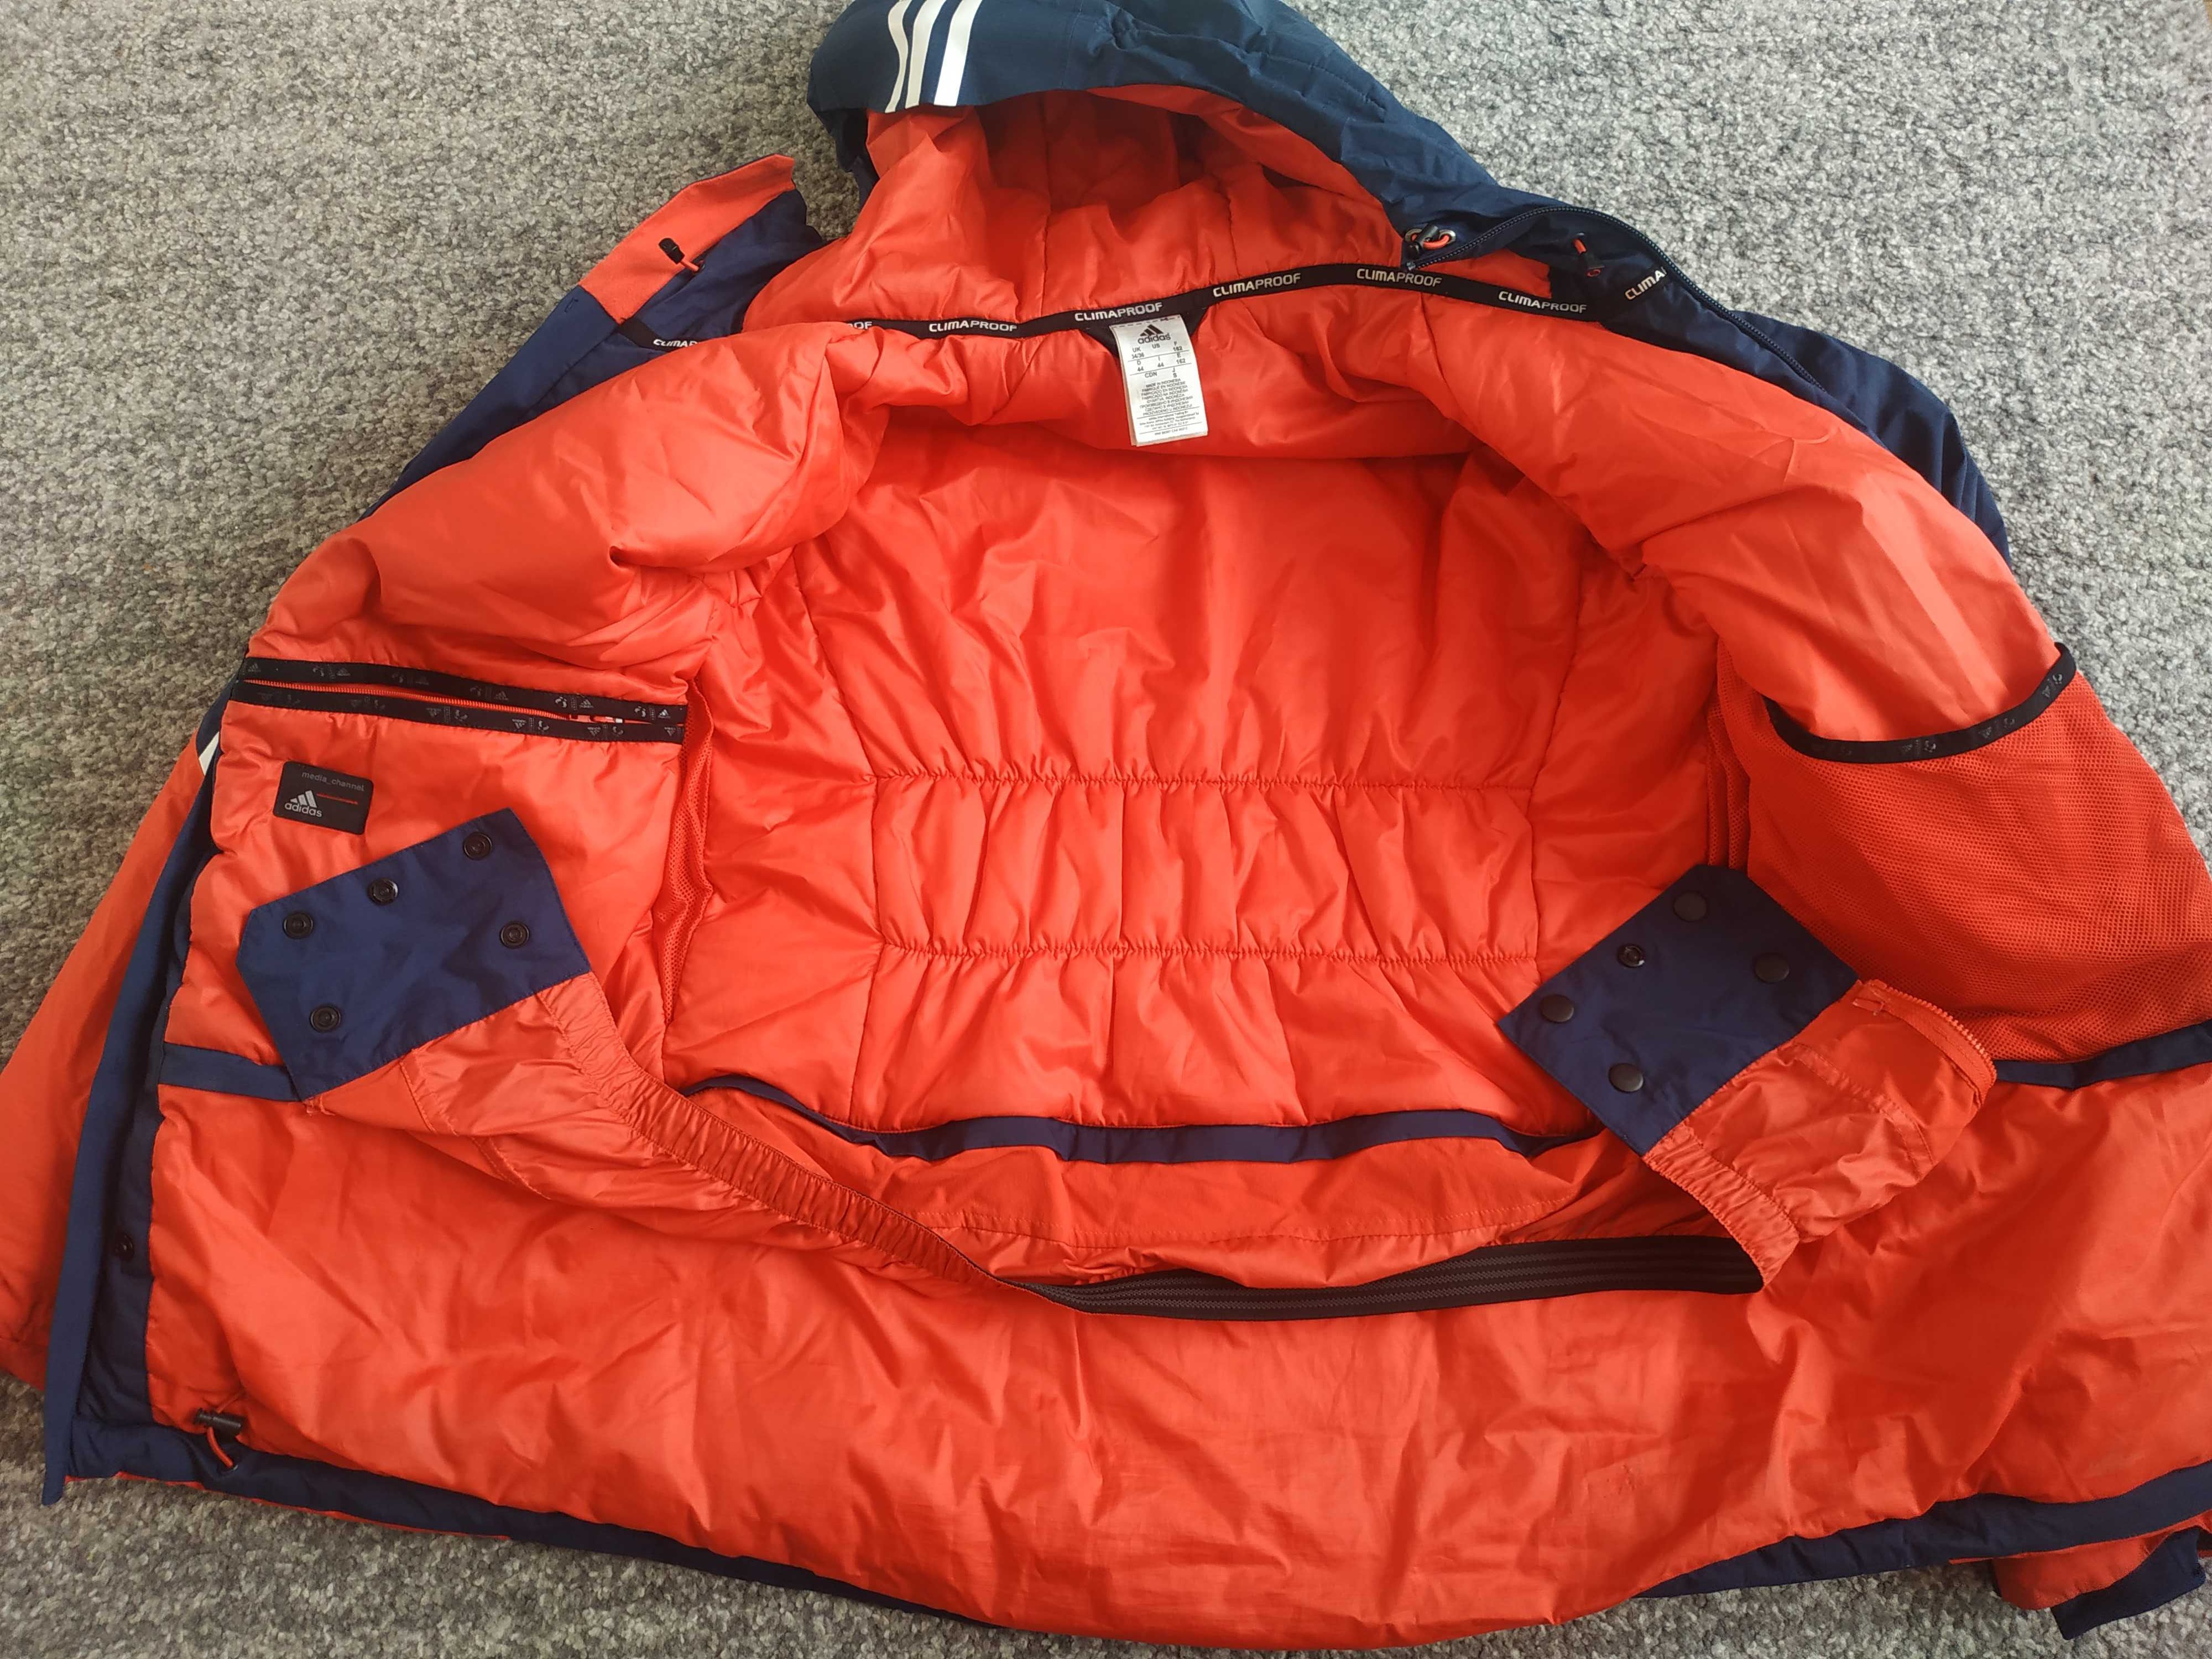 Kurtka narciarska Adidas ClimaProof, rozmiar UK 34/36 , PL 40/42